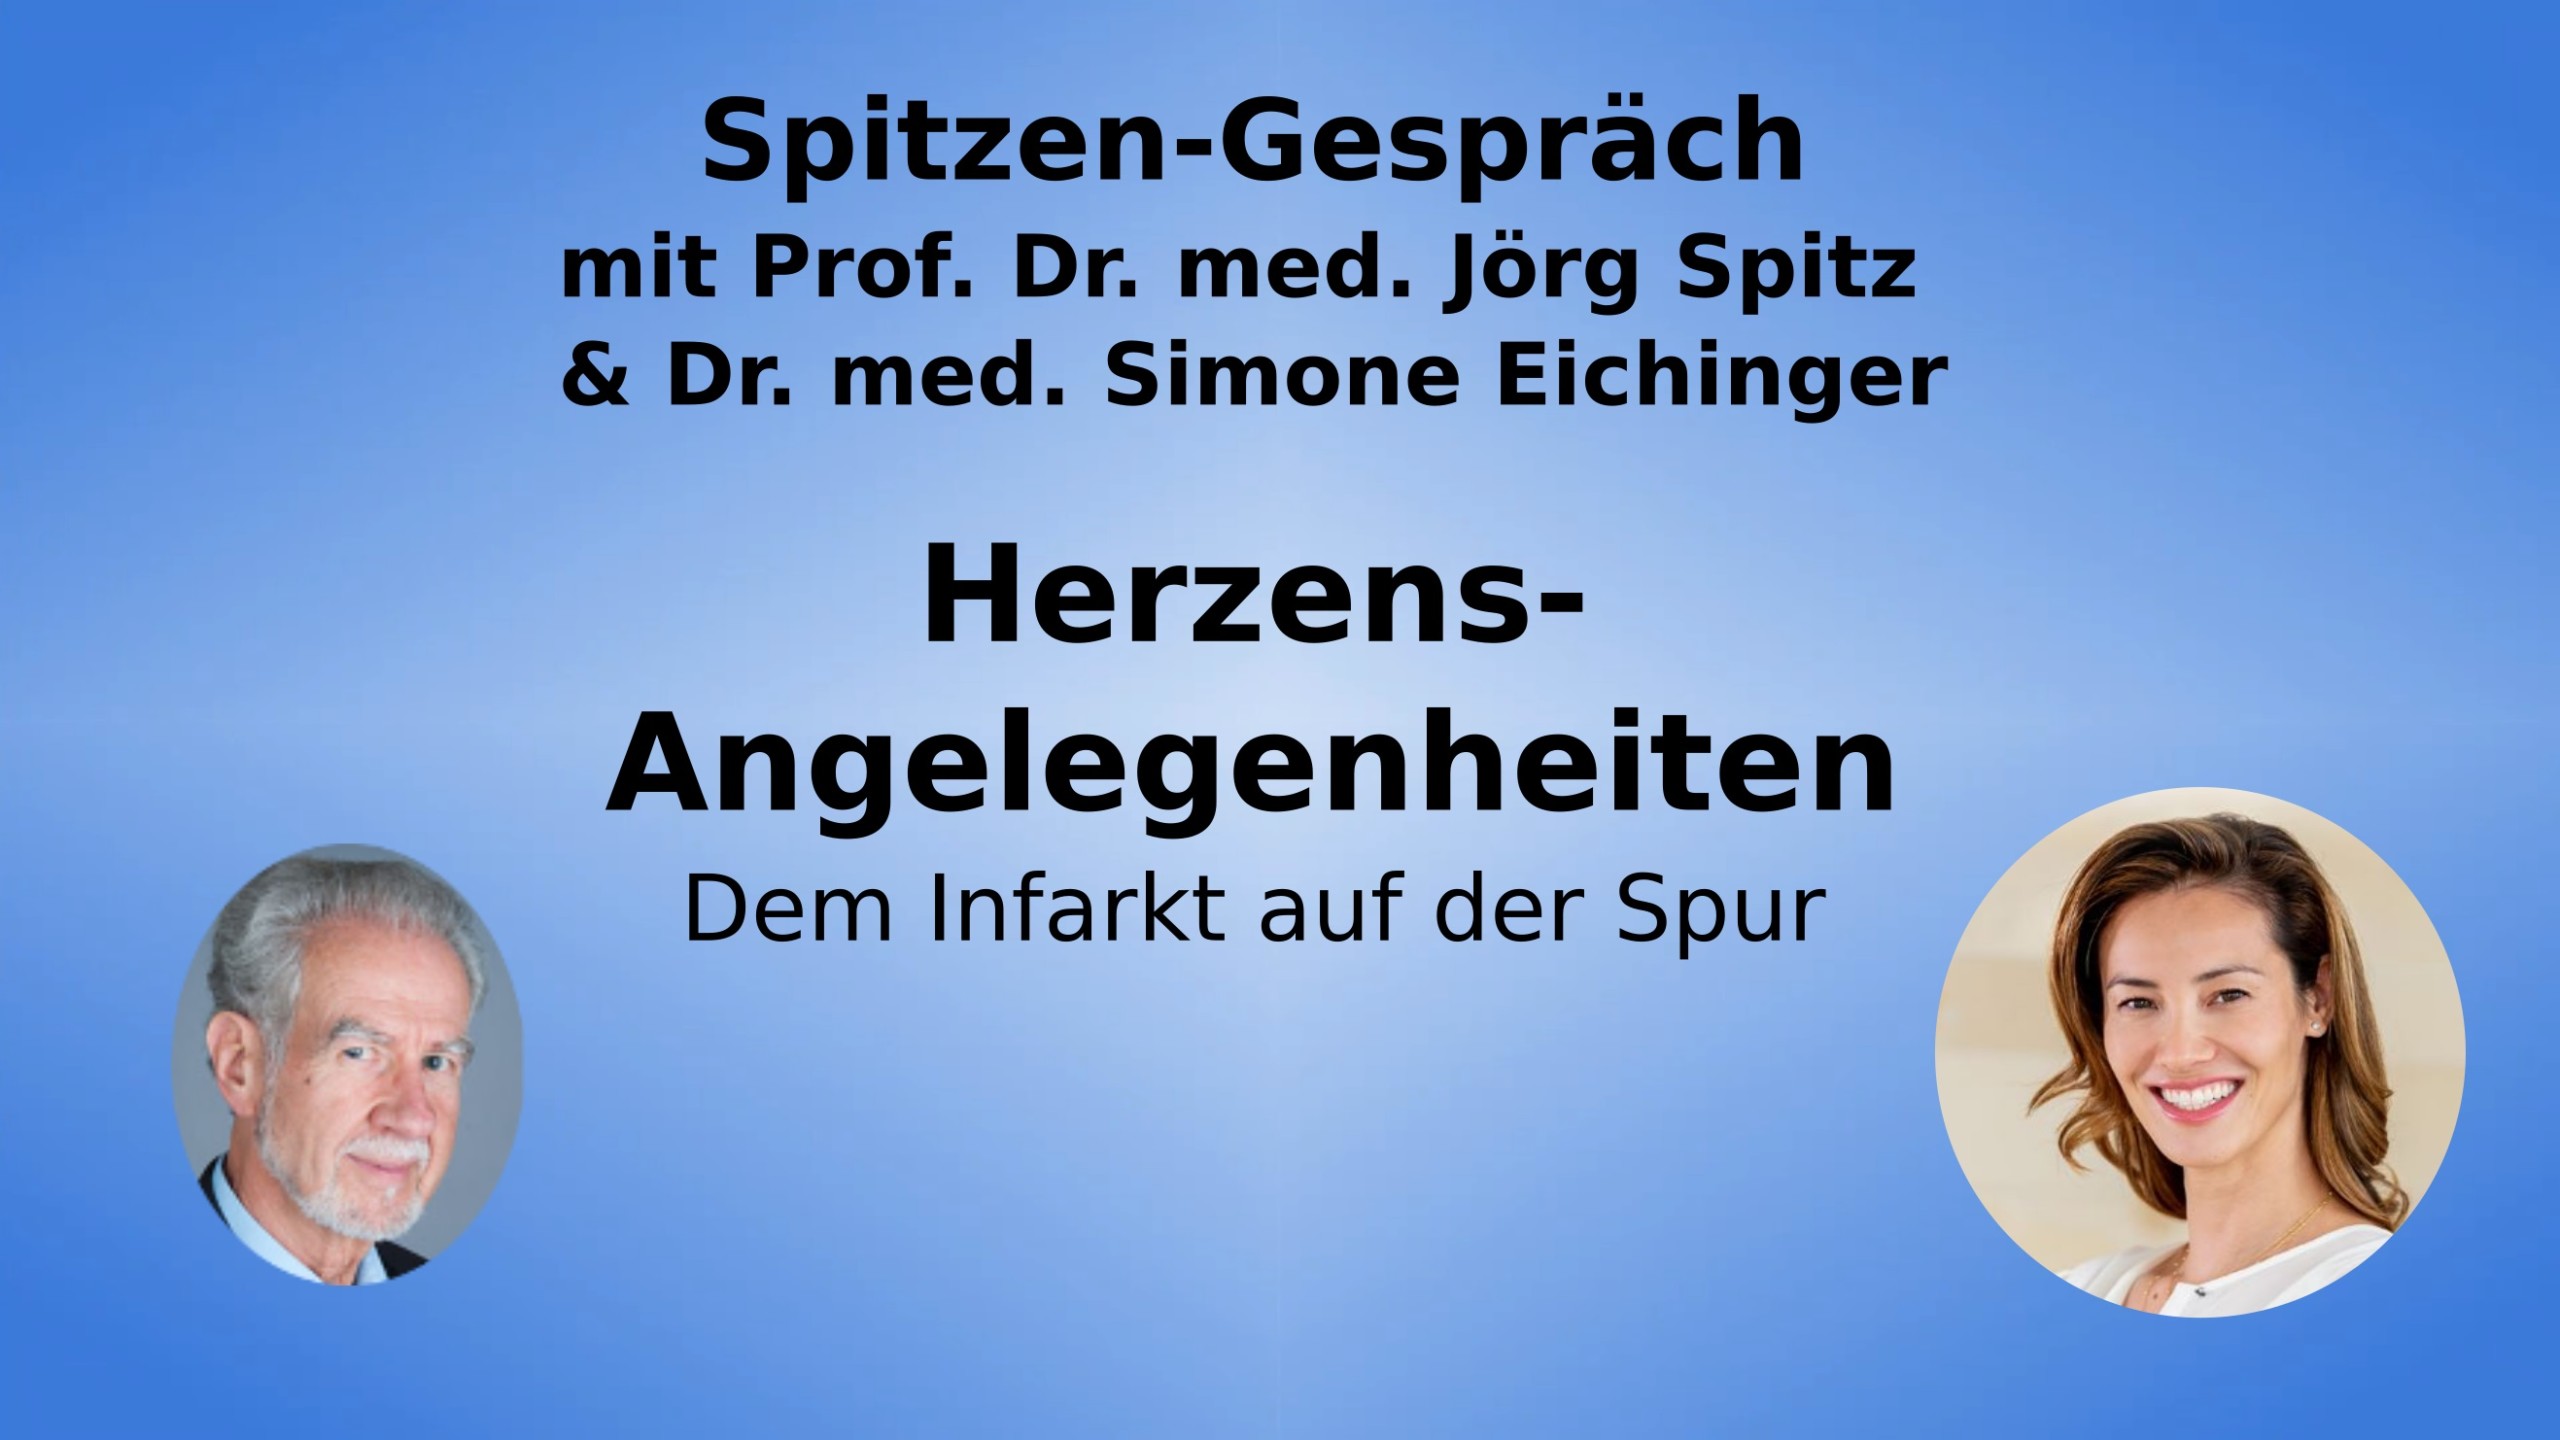 Prof. Dr, med. Jörg Spitz & Dr. med. Simone Eichinger